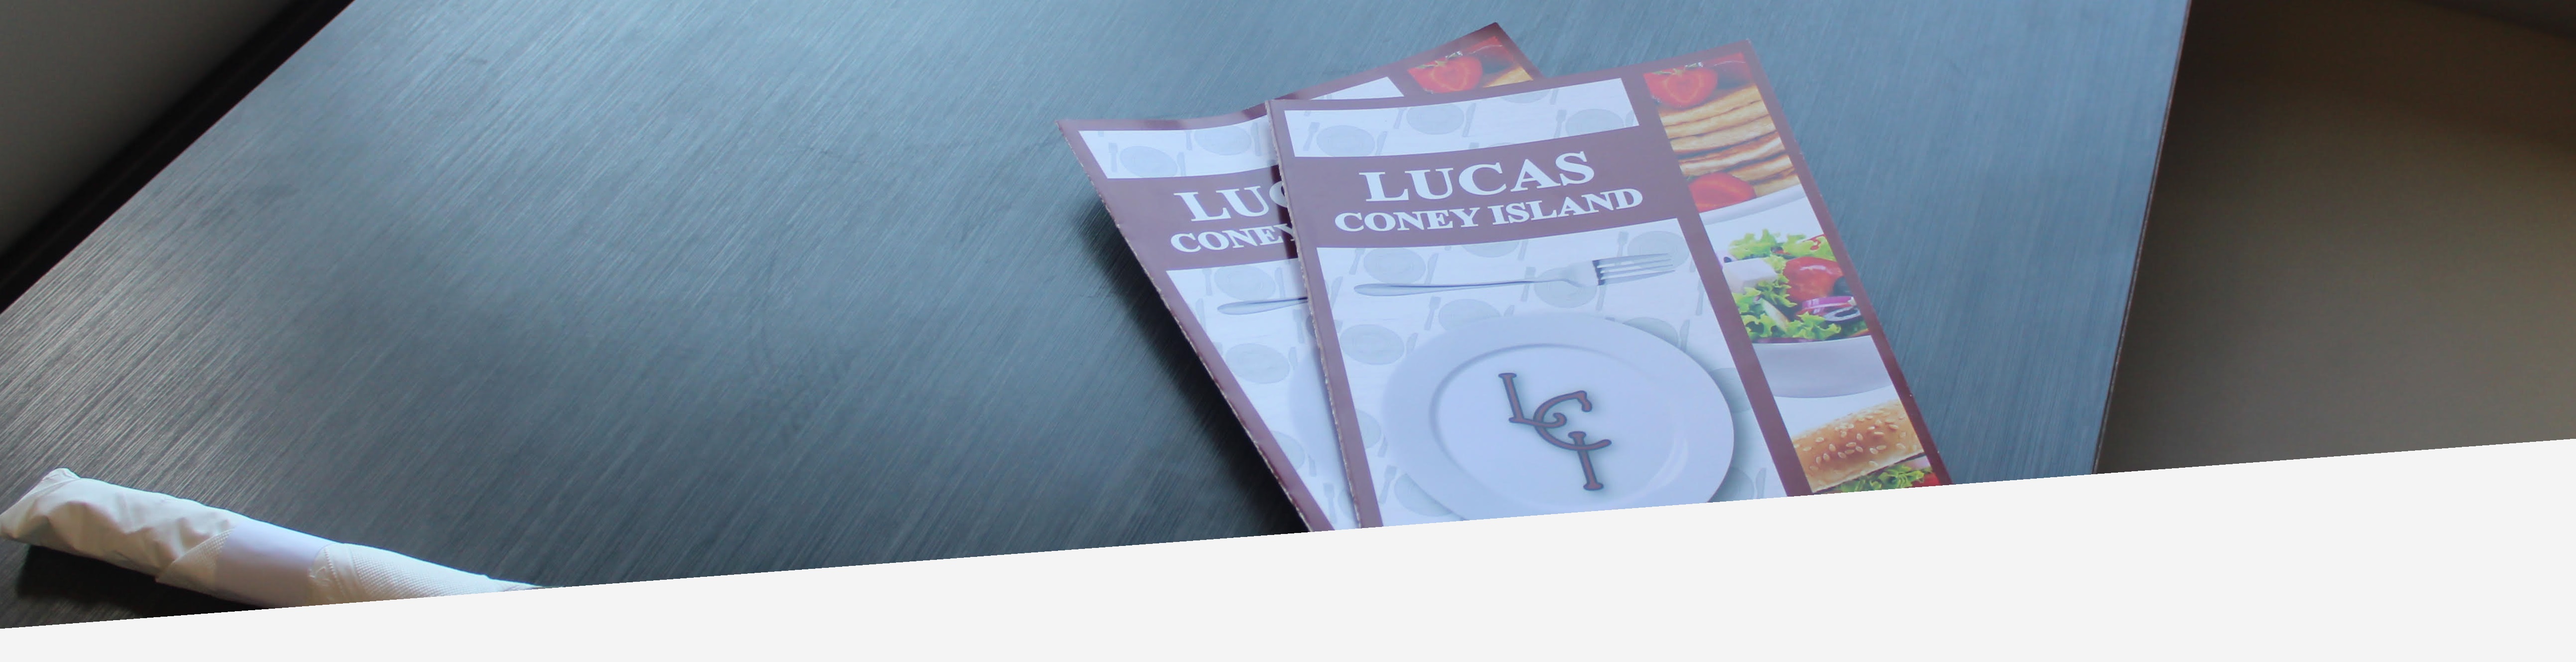 Home Lucas' Coney Island